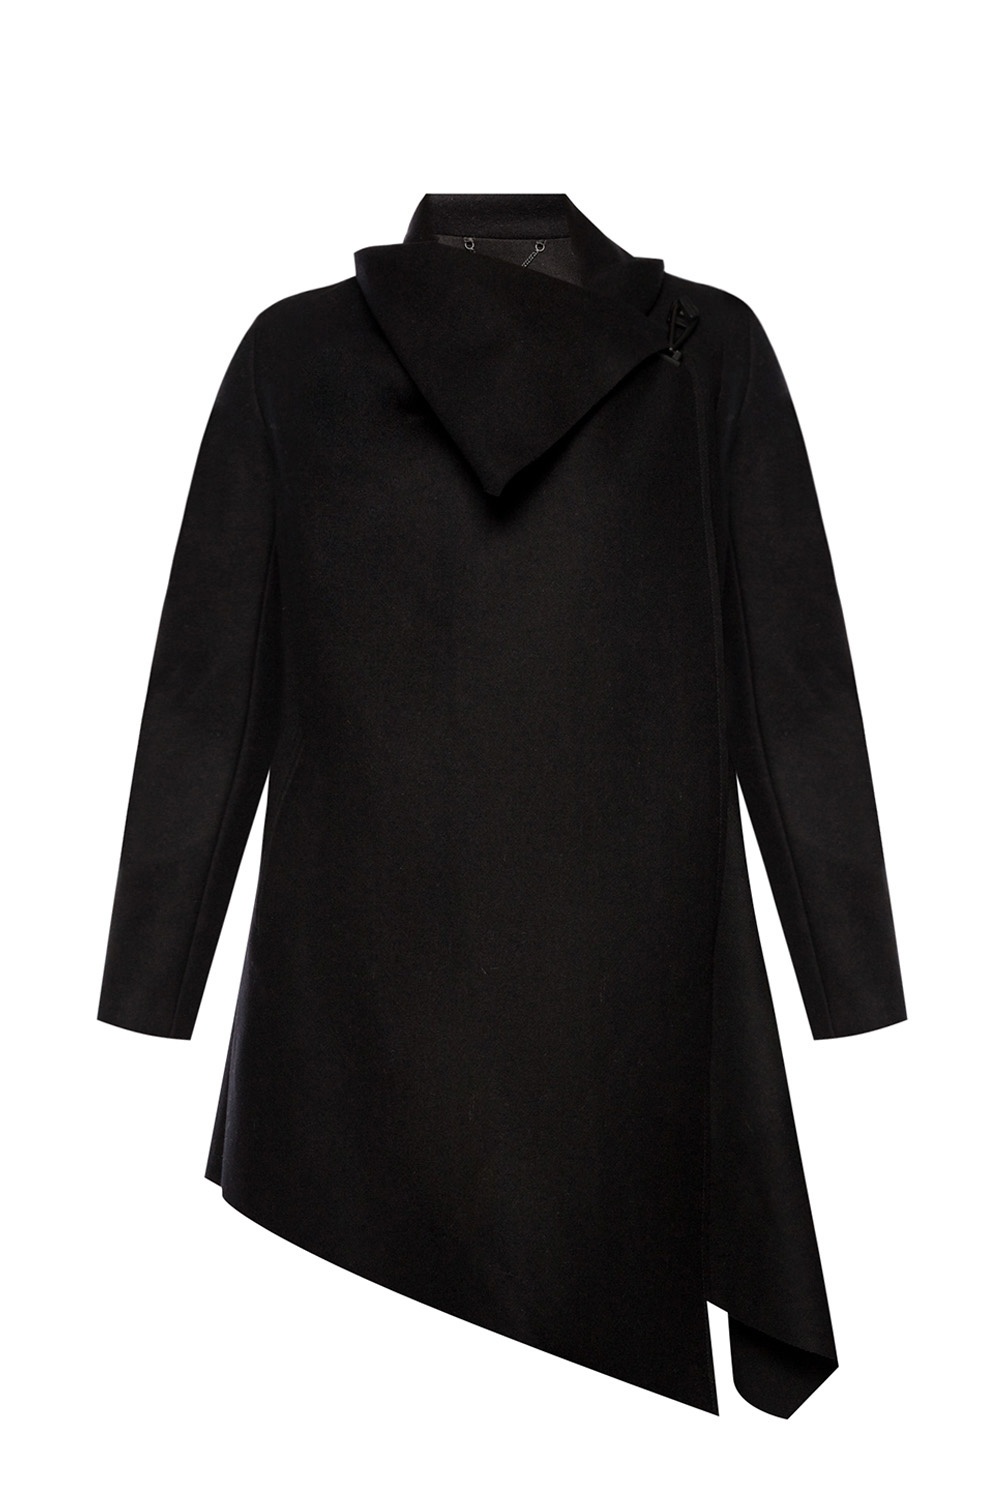 AllSaints 'City' asymmetrical coat